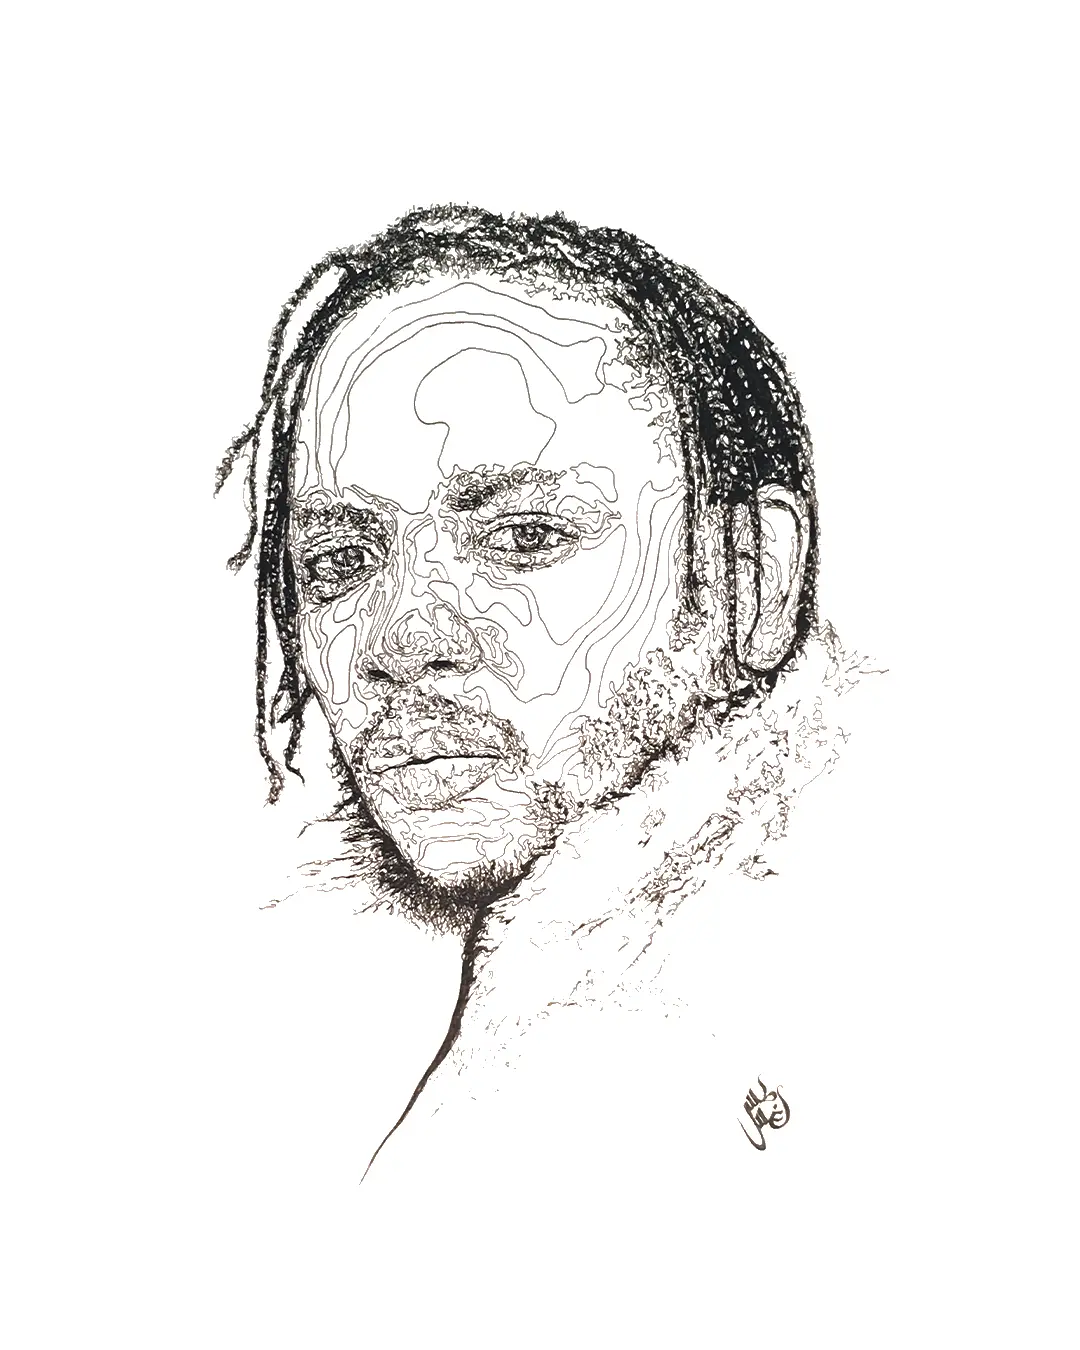 Kendrick-Lamar-02-1080×1350-augustus-rivers-brightman